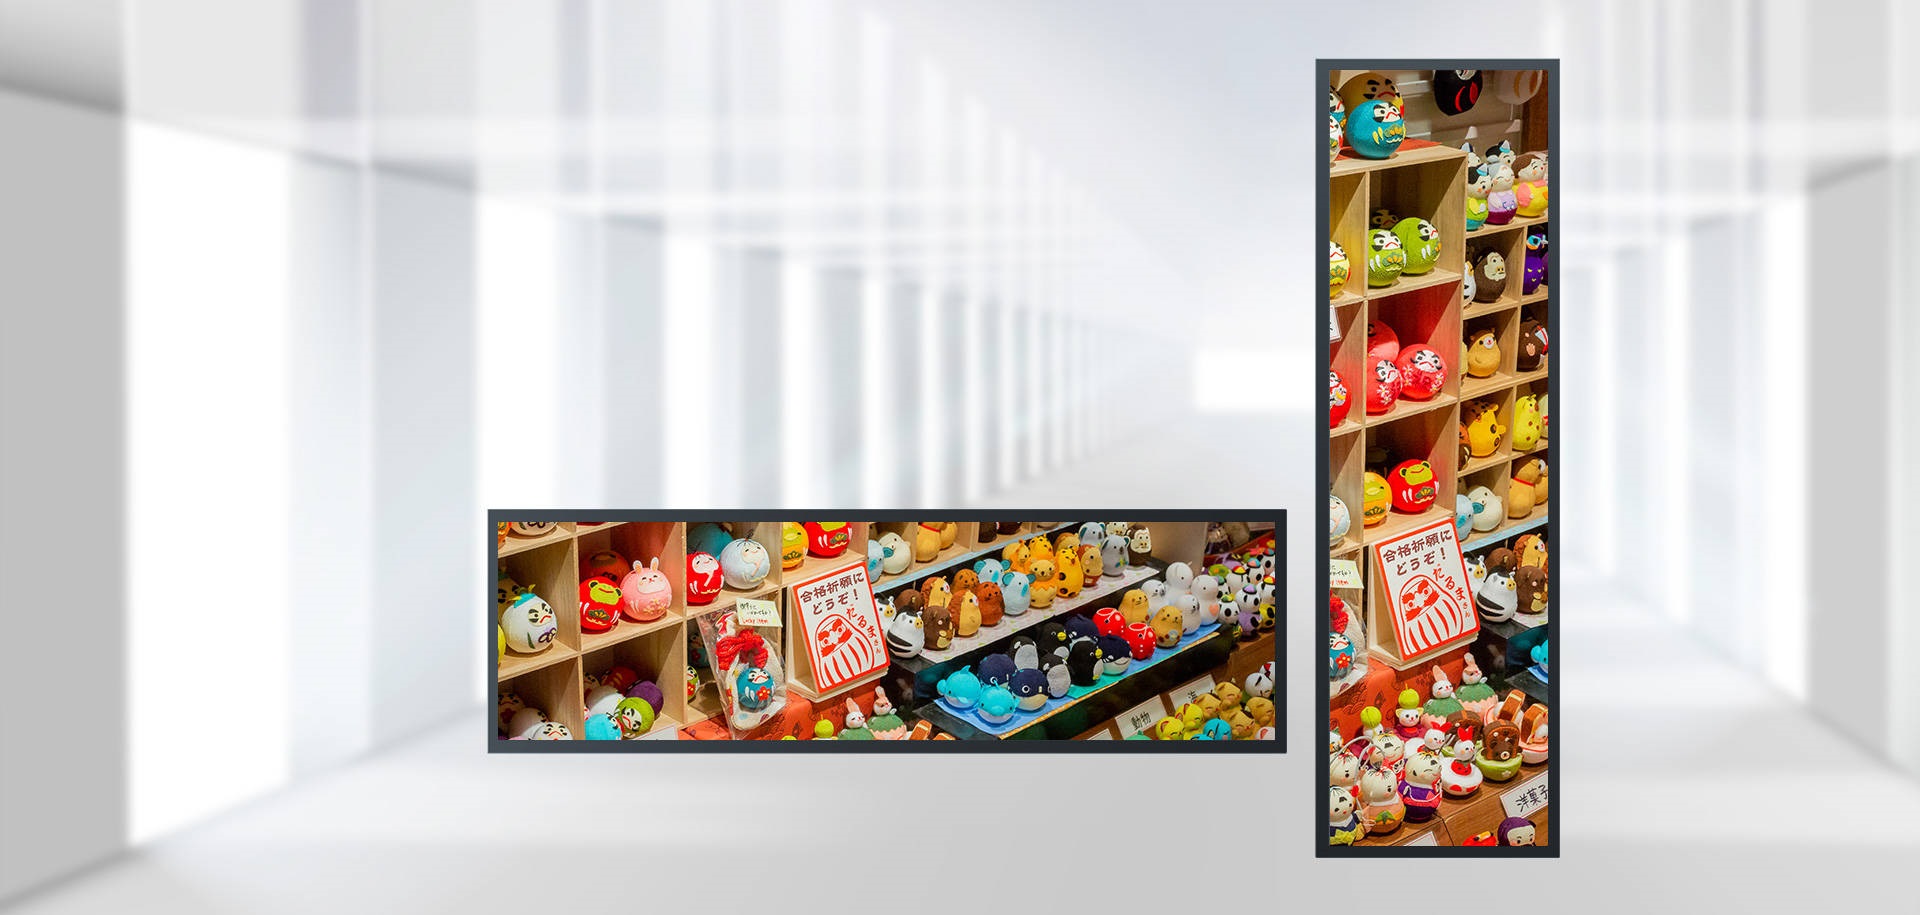 Αξία εφαρμογής του προγράμματος αναπαραγωγής διαφήμισης οθόνης LCD strip bar σε μεγάλο σούπερ μάρκετ